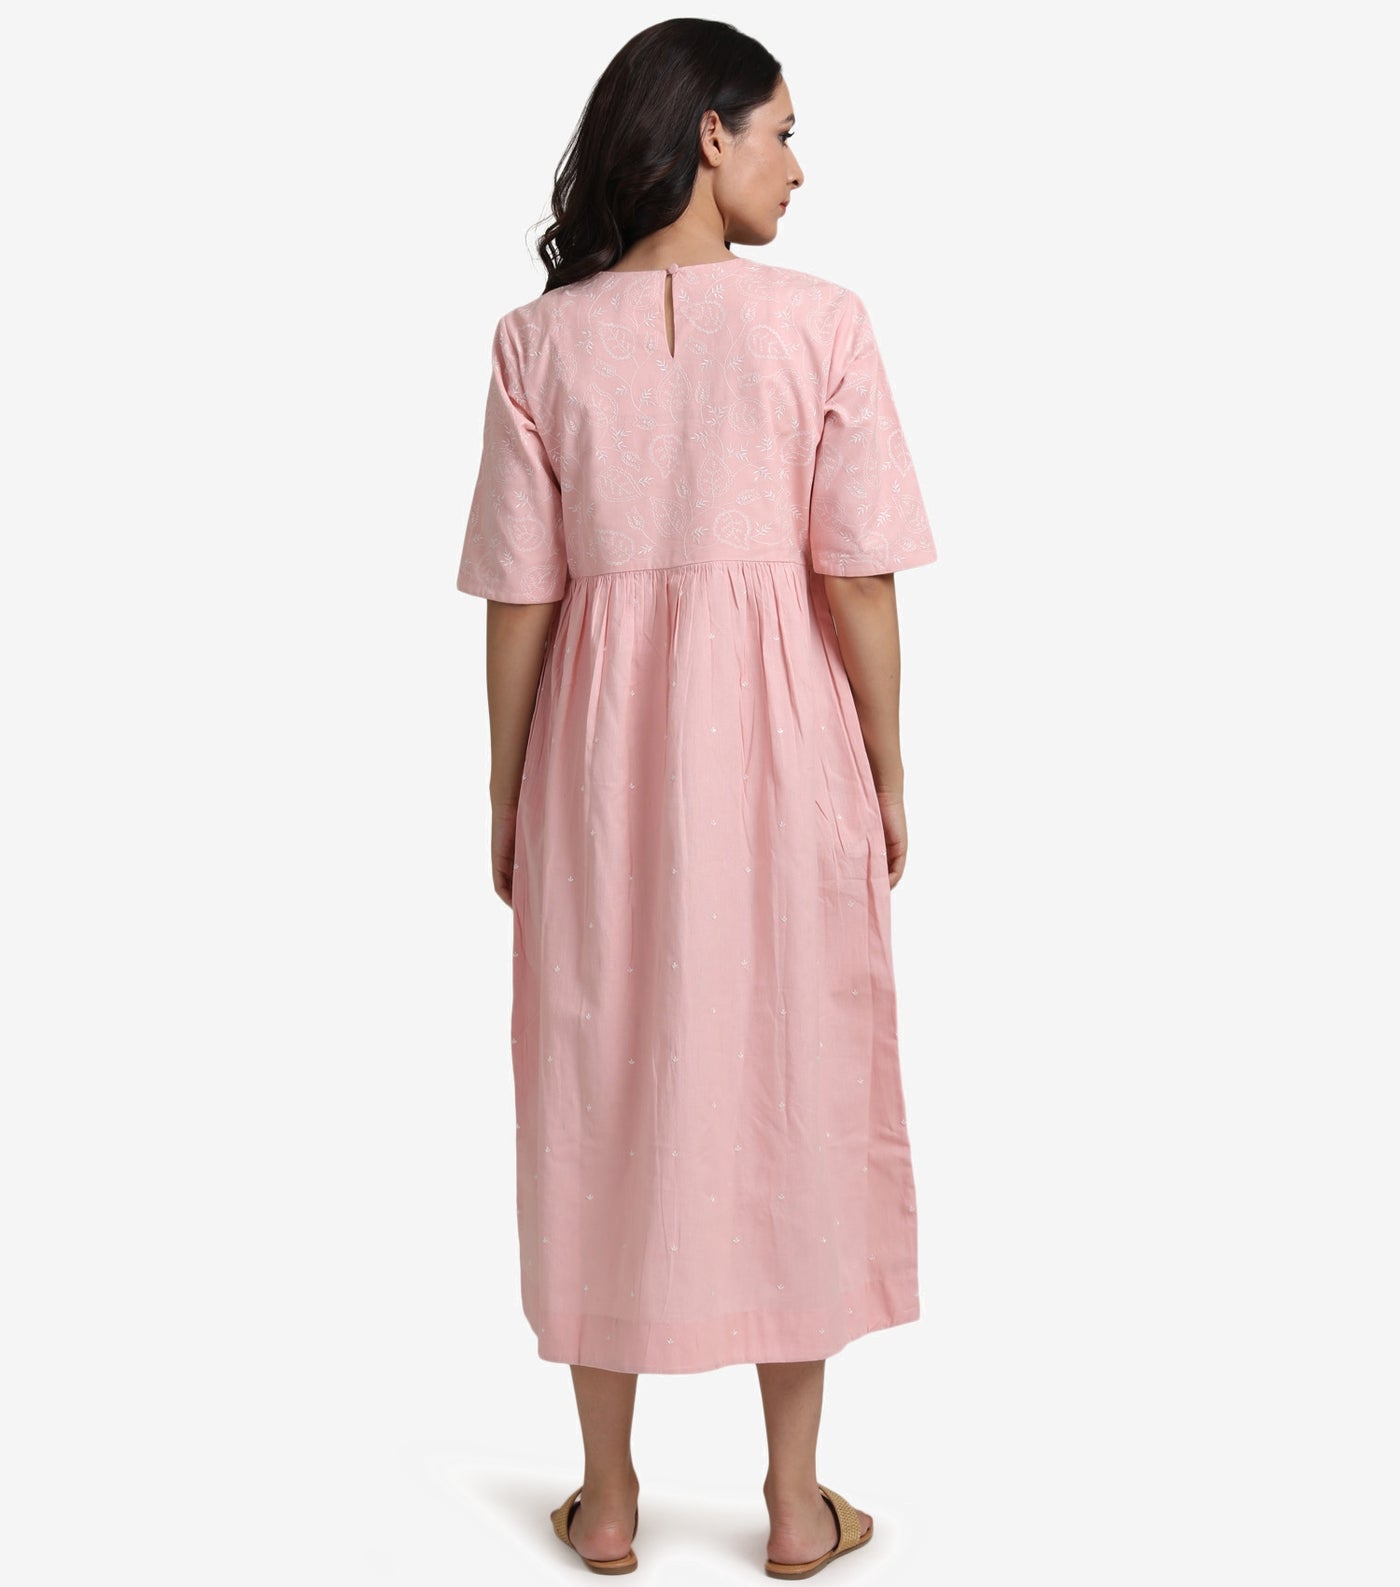 Pink cotton linen dress